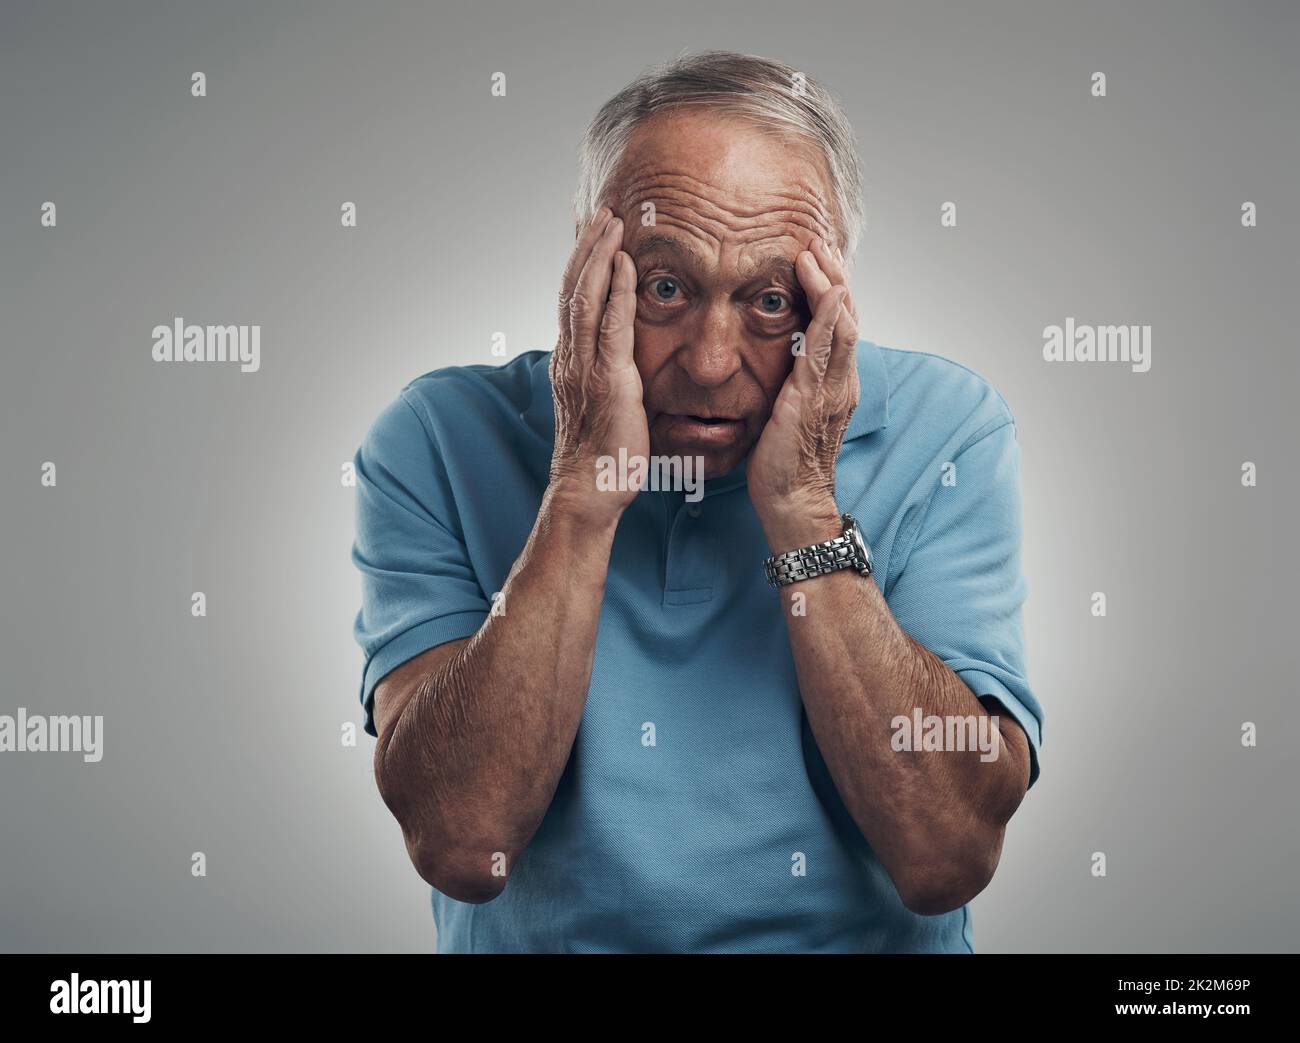 Le stress pourrait juste me tuer. Photo d'un homme âgé qui claque ses mains sur son visage dans un studio sur fond gris. Banque D'Images